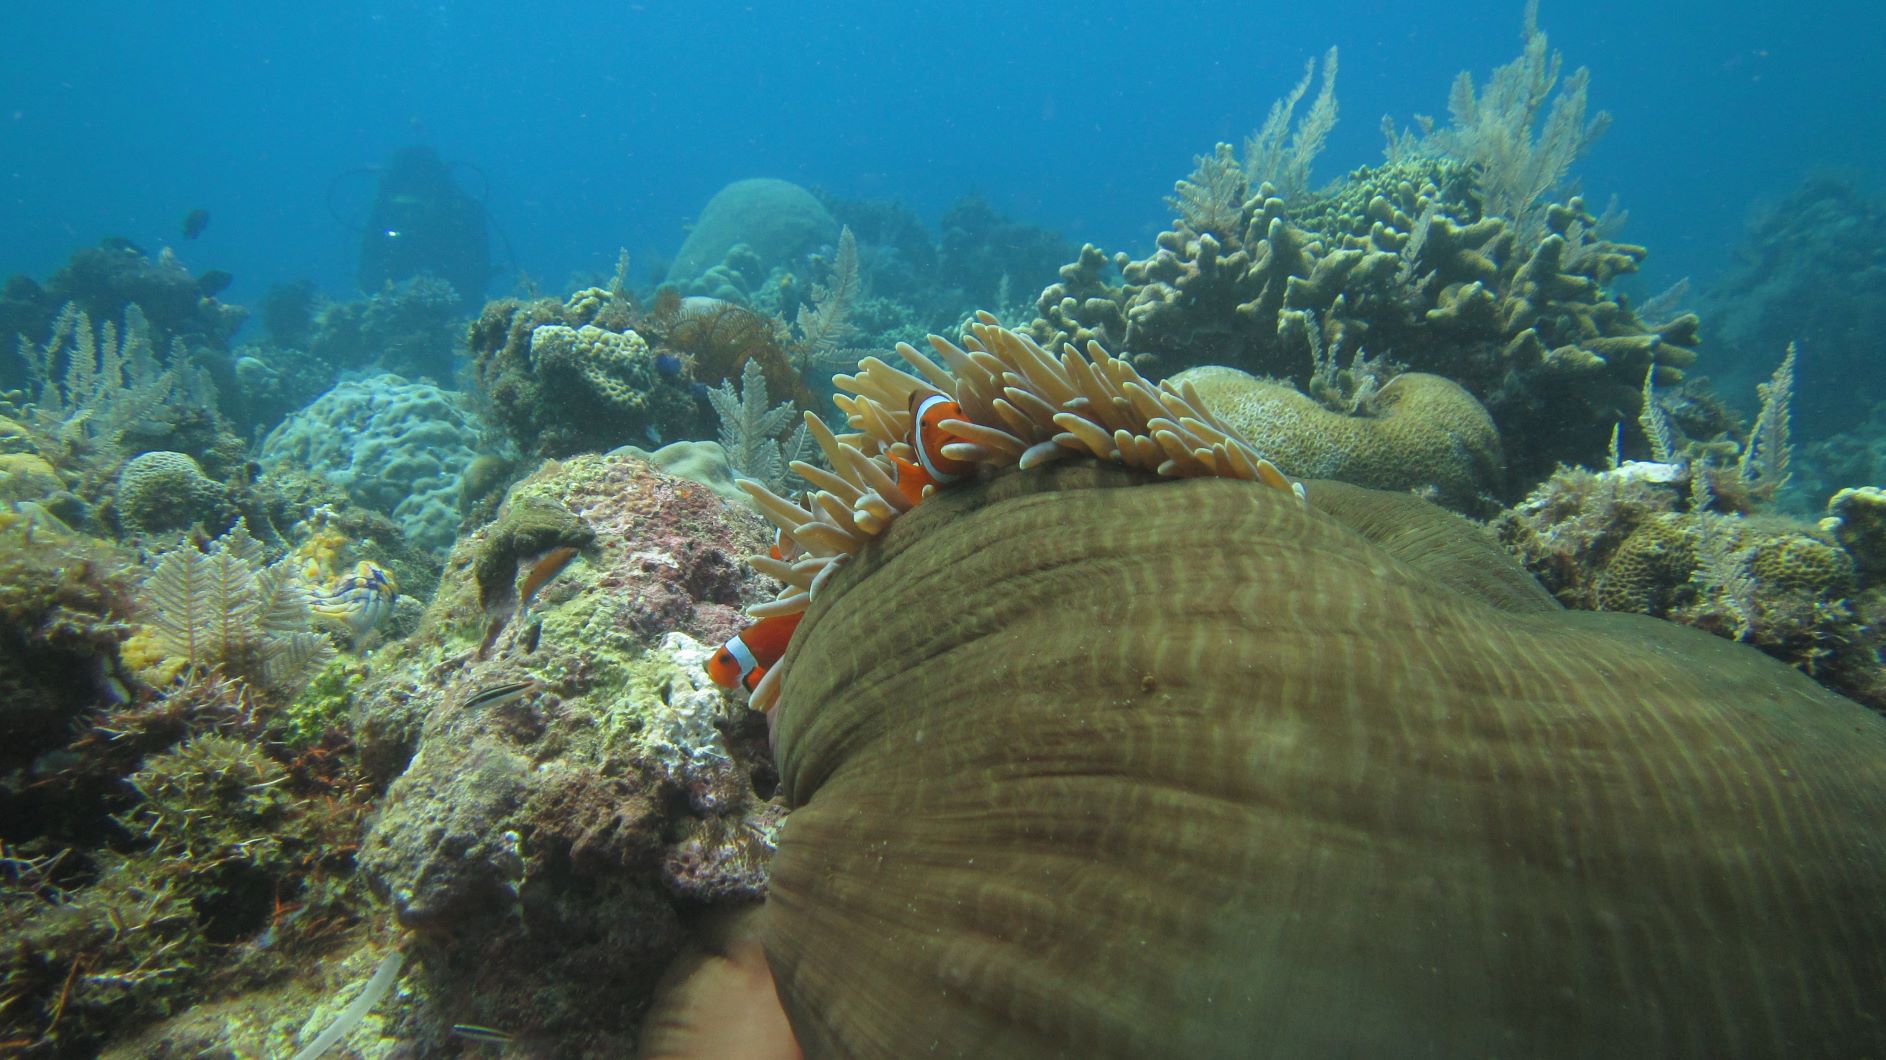 Nemo ini yang paling sering dicari dan disukai untuk dijadikan obyek foto bawah air. (Foto: GraceyWakary)